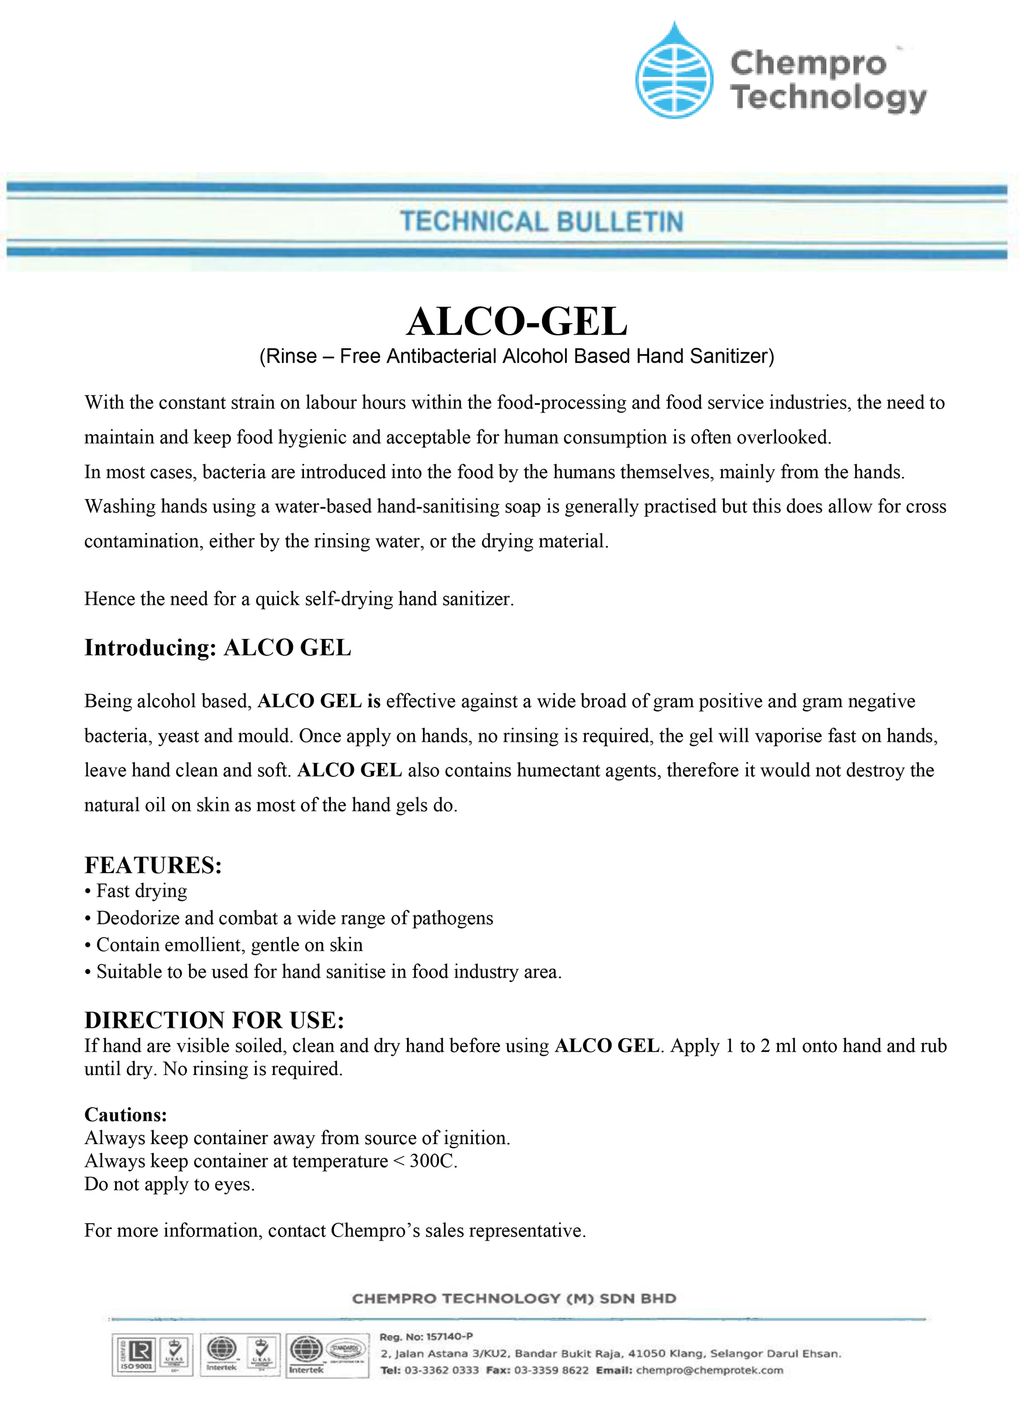 alco gel - technical bulletin.jpg